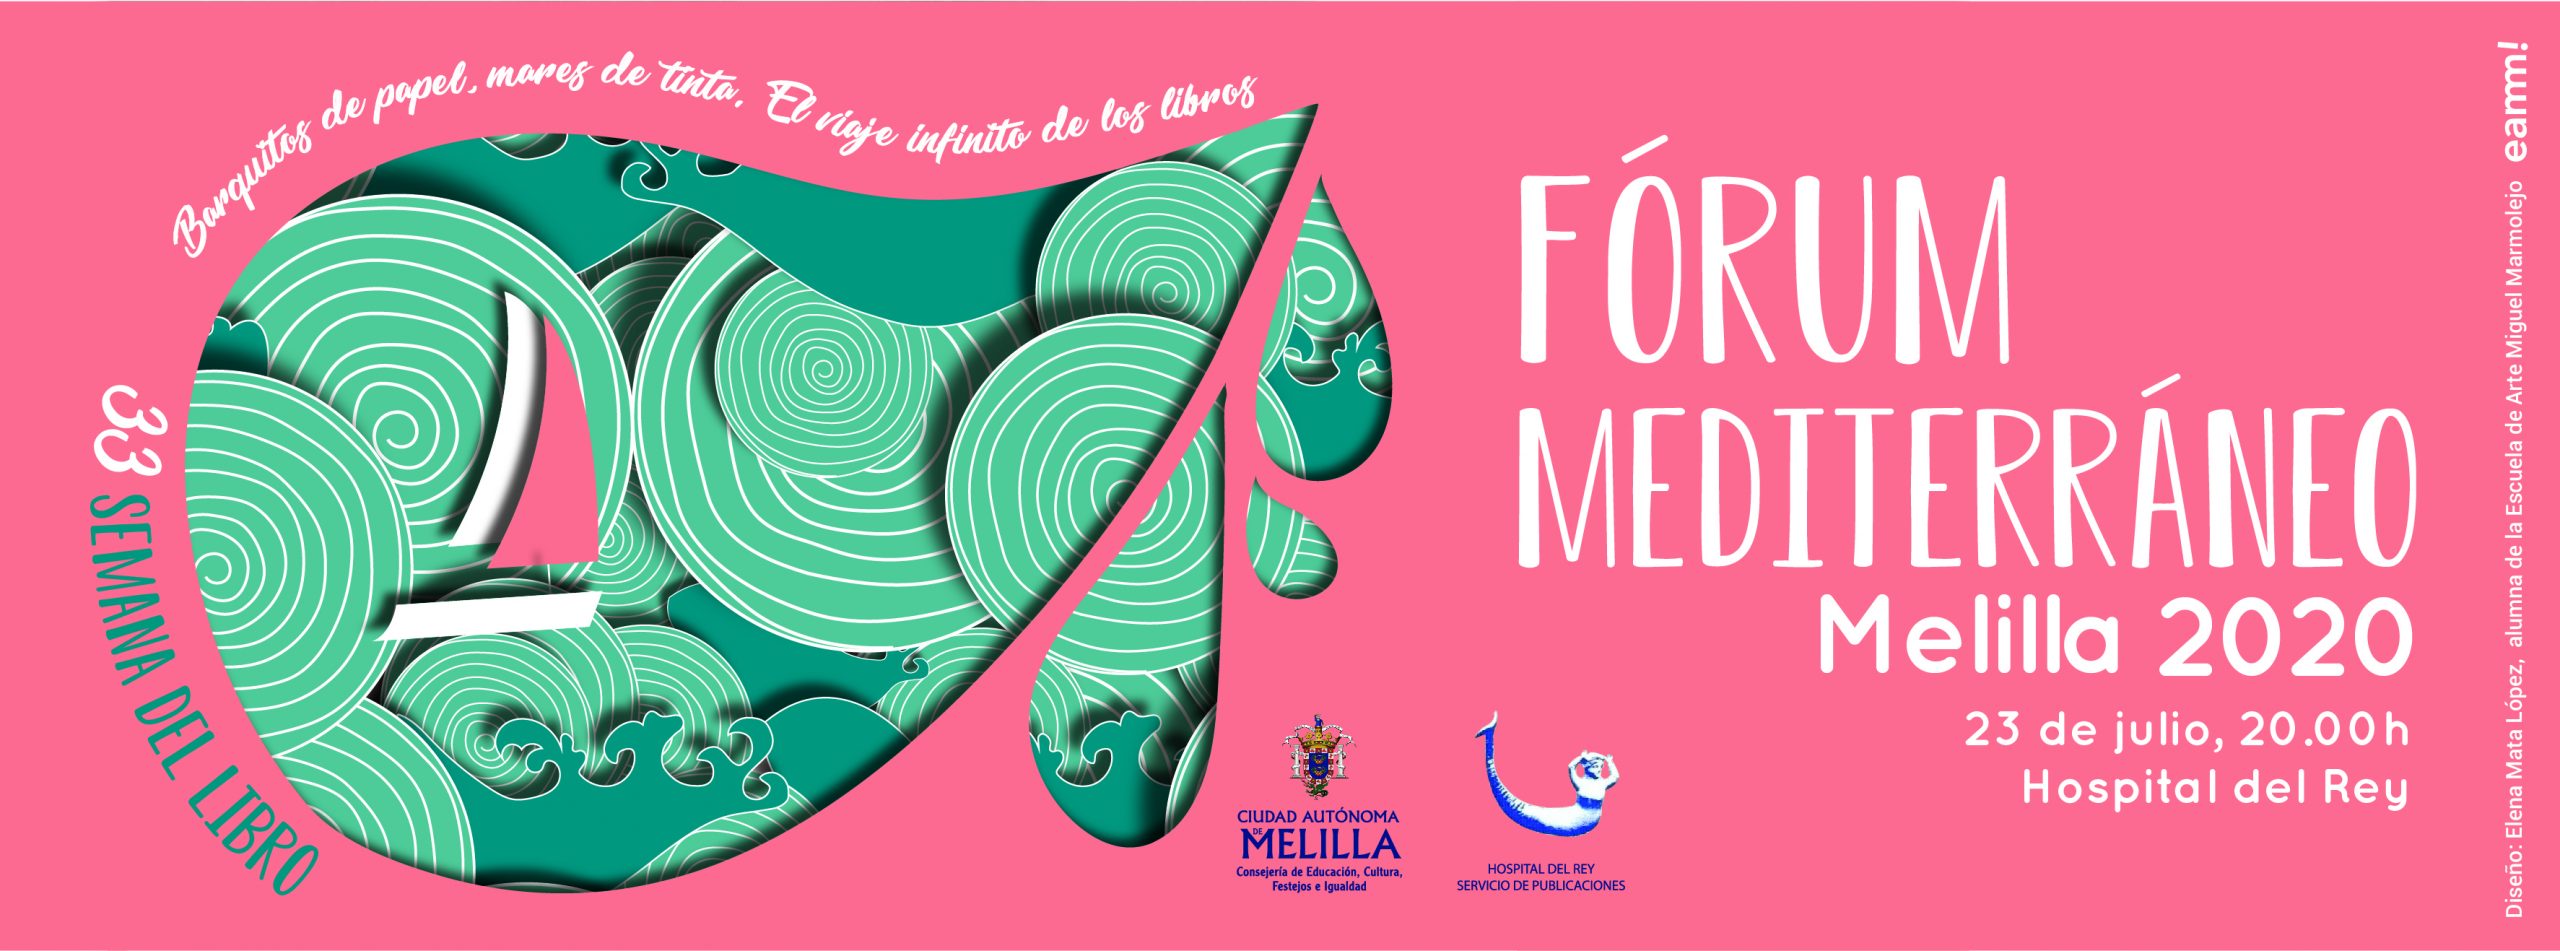 Fórum Mediterráneo Melilla 2020